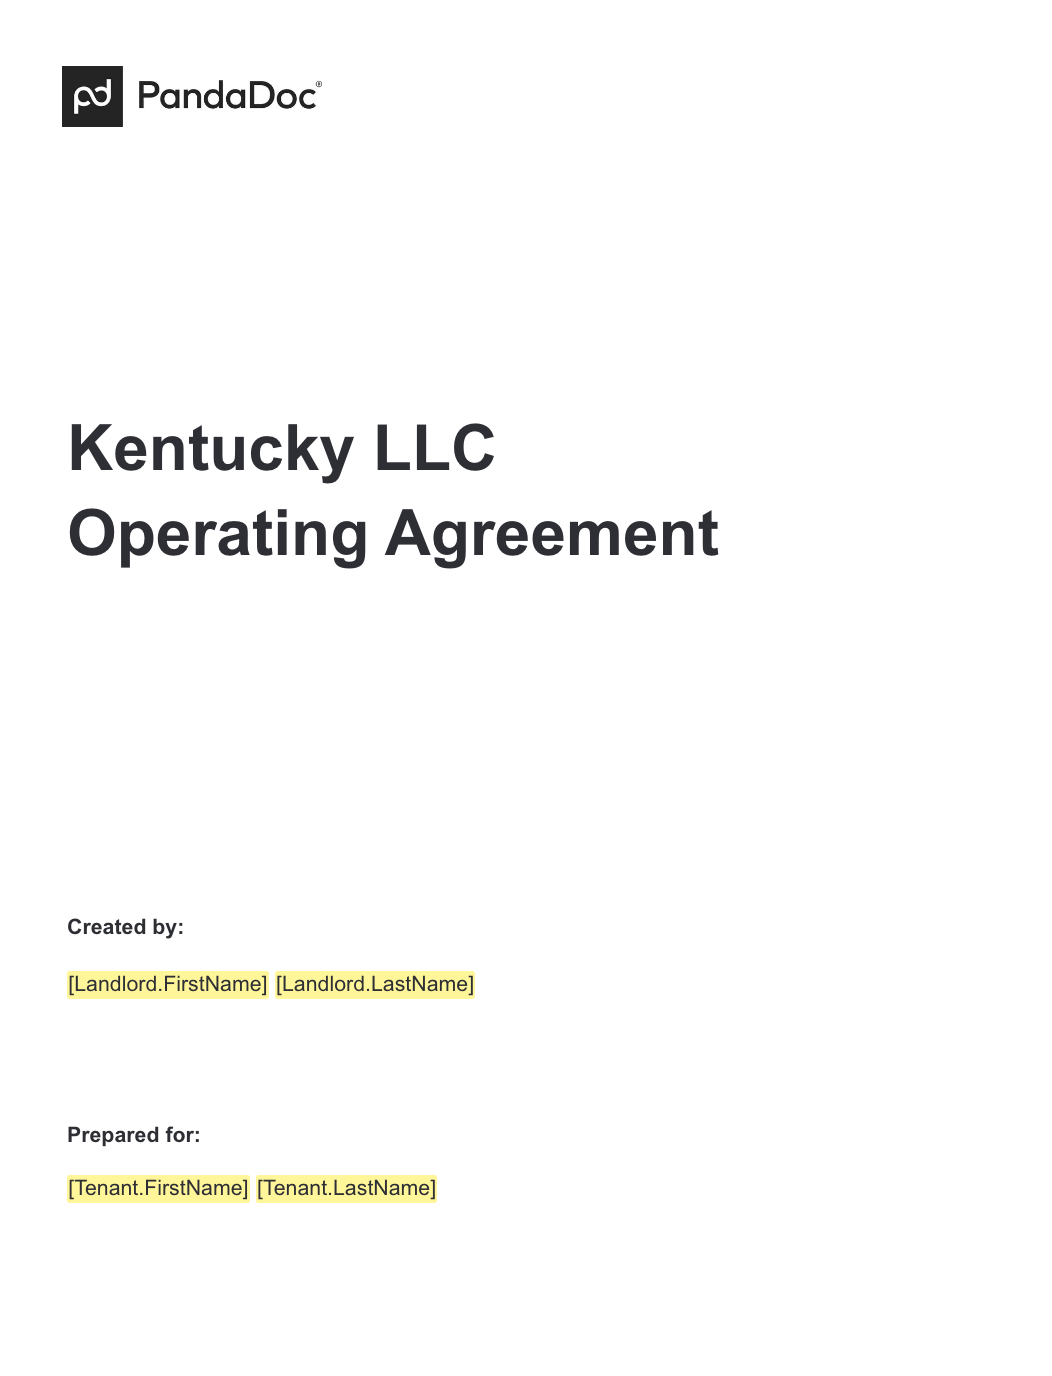 Kentucky LLC Operating Agreement 